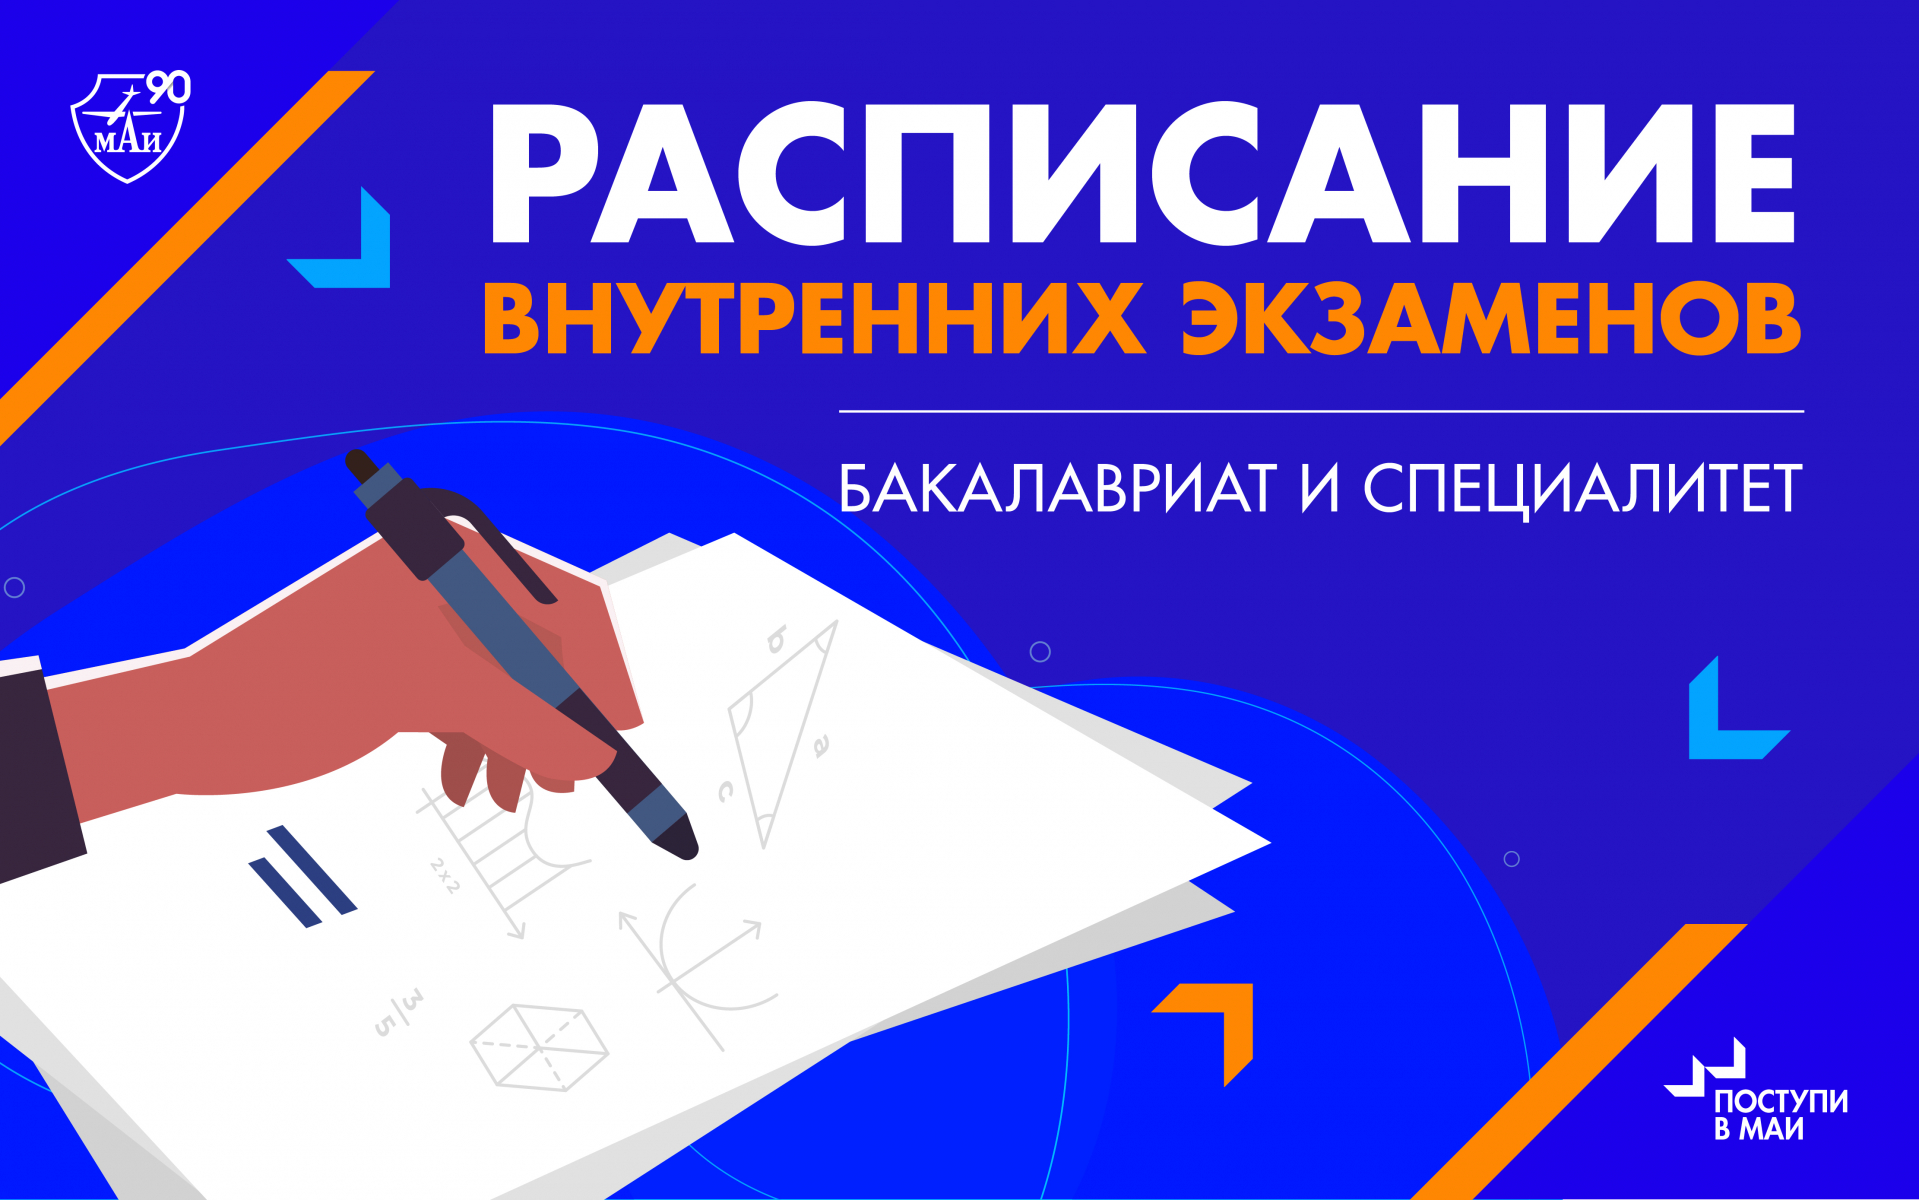 9 мая экзамен. Внутренний экзамен. Картинки внутренний экзамен. МАИ бакалавриат внутренние экзамены. НИГАЙК Новосибирск.